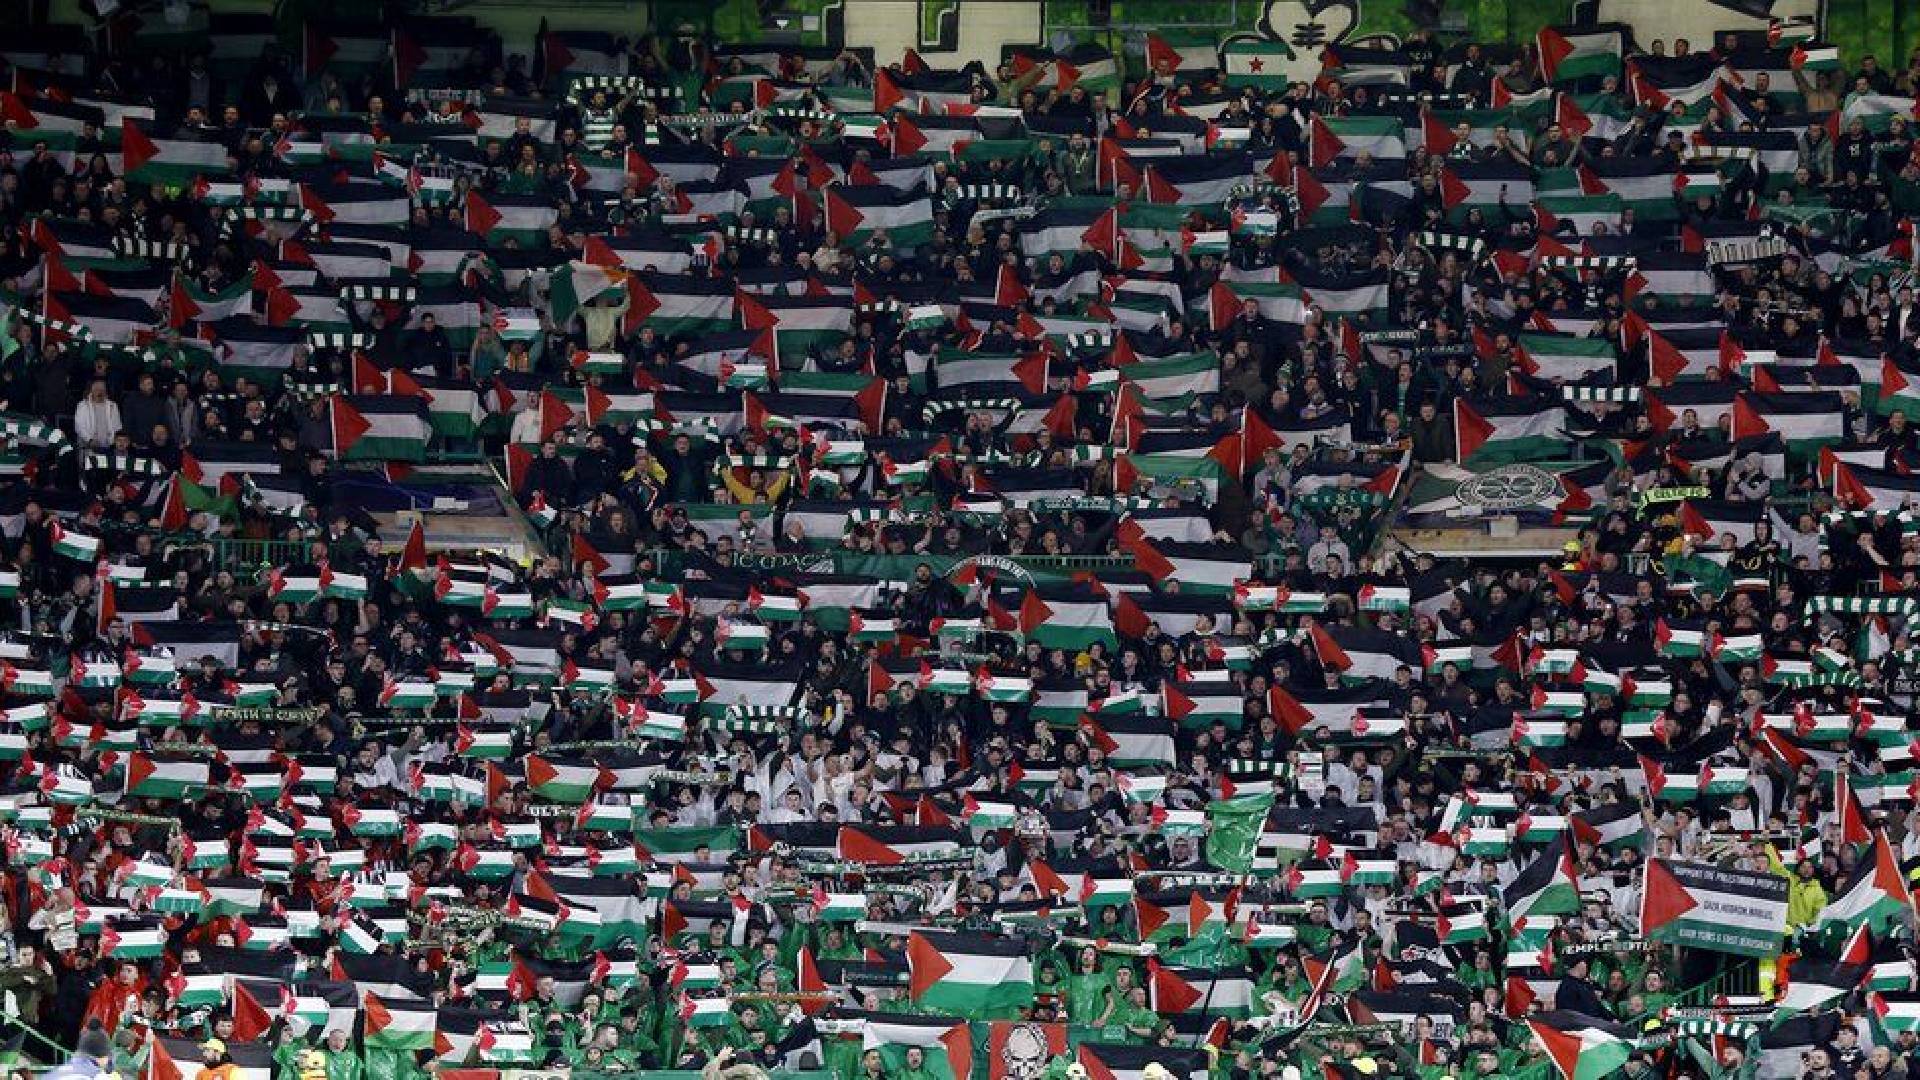 Penyokong Celtic Enggan Ikut Perintah UEFA, Kibar Ribuan Bendera Palestin